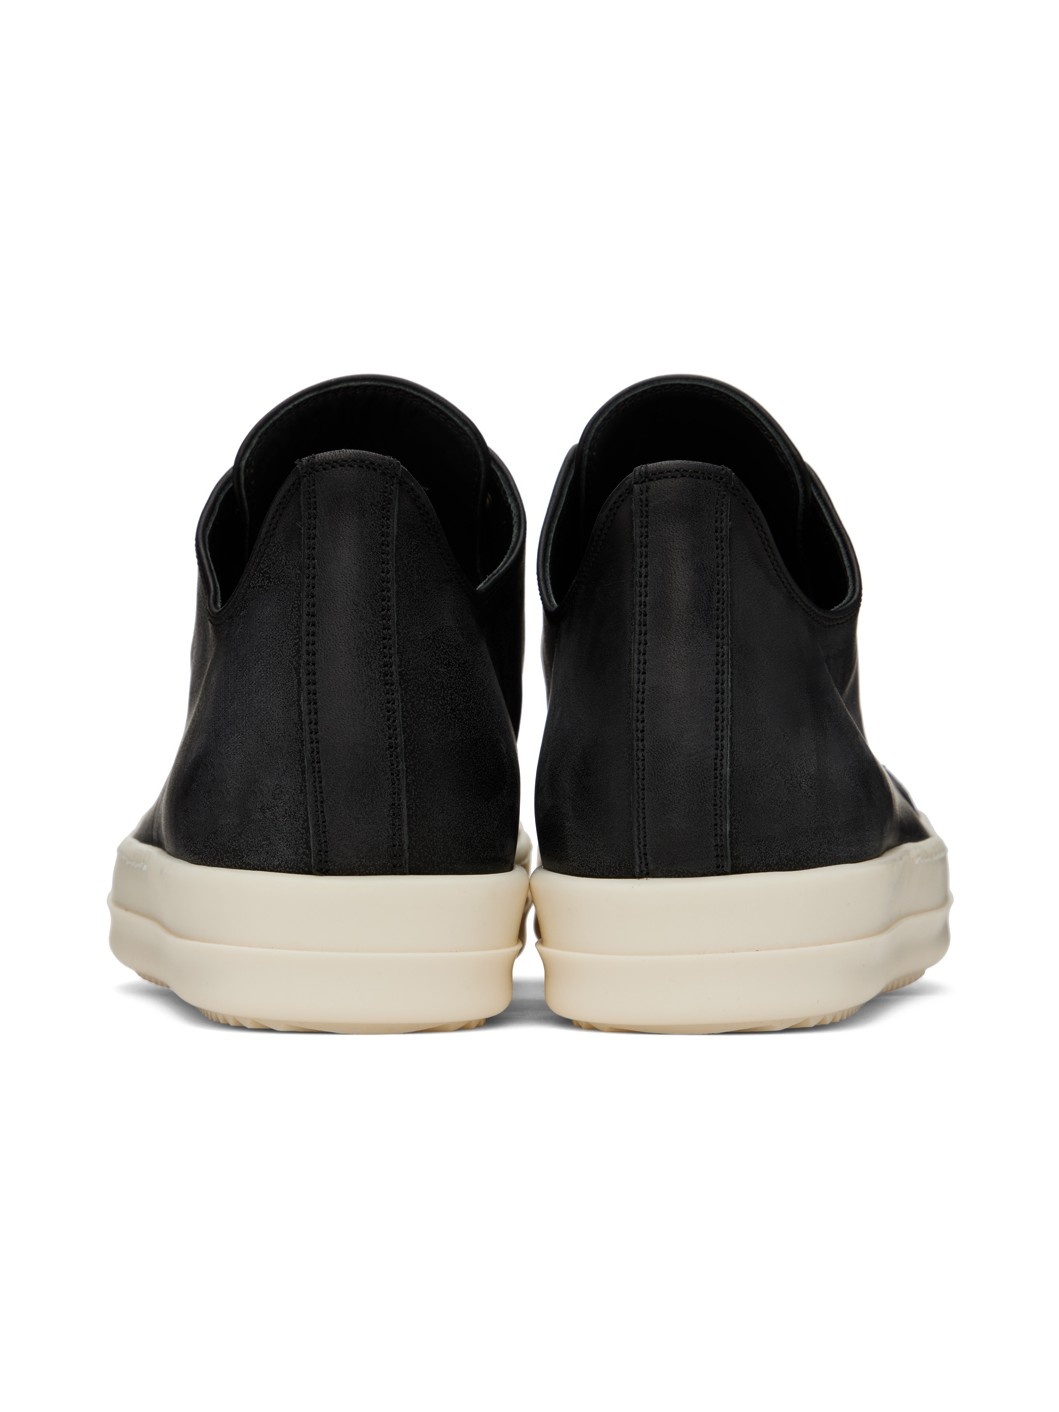 Black Low Sneakers - 2